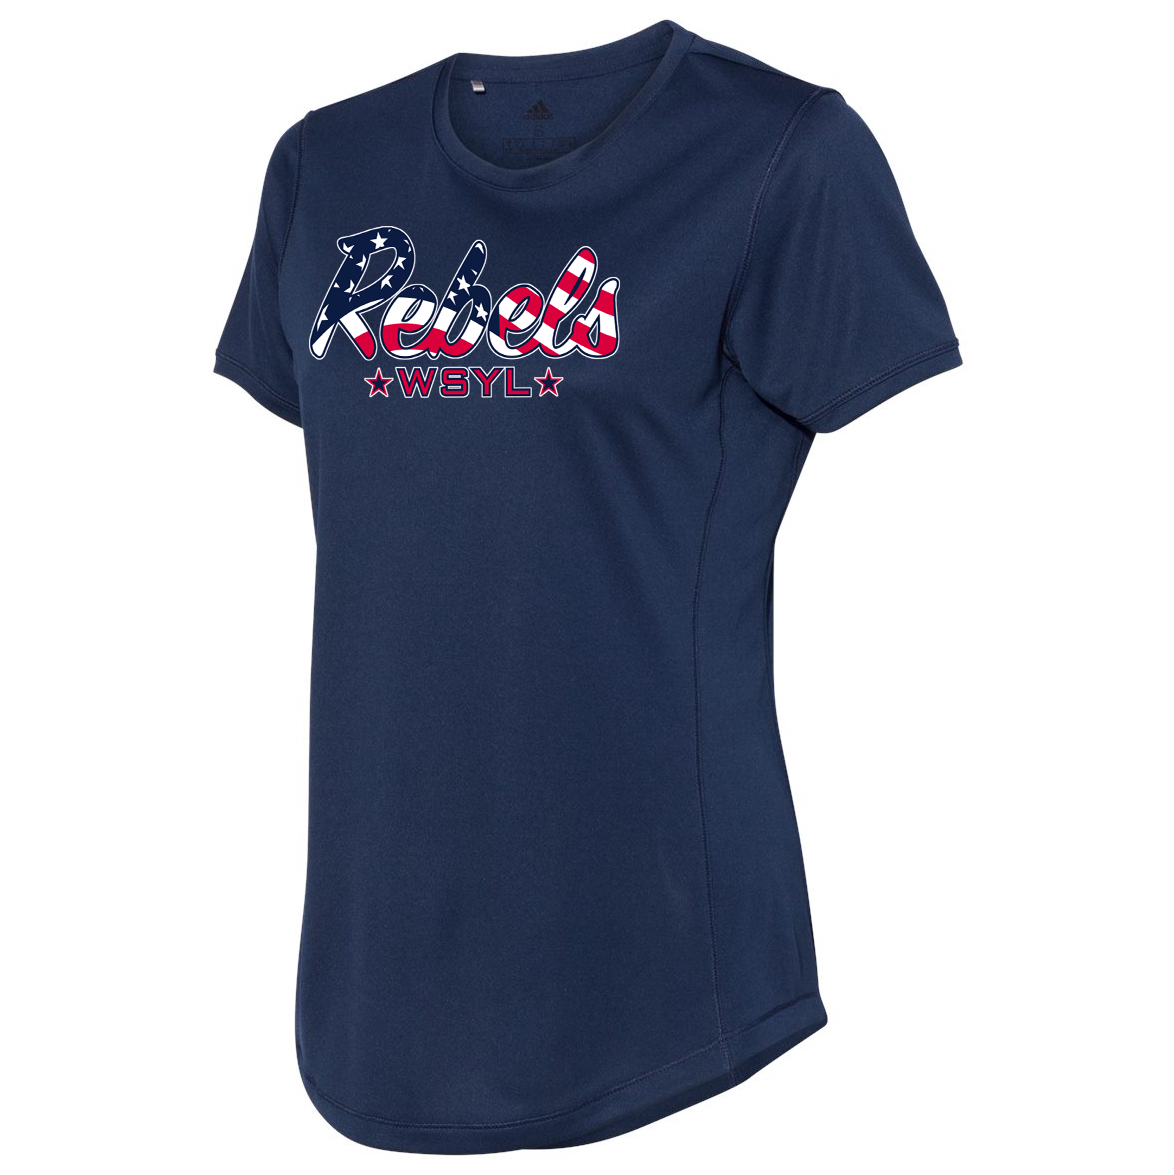 Rebels World Series Youth League Women's Adidas Sport T-Shirt